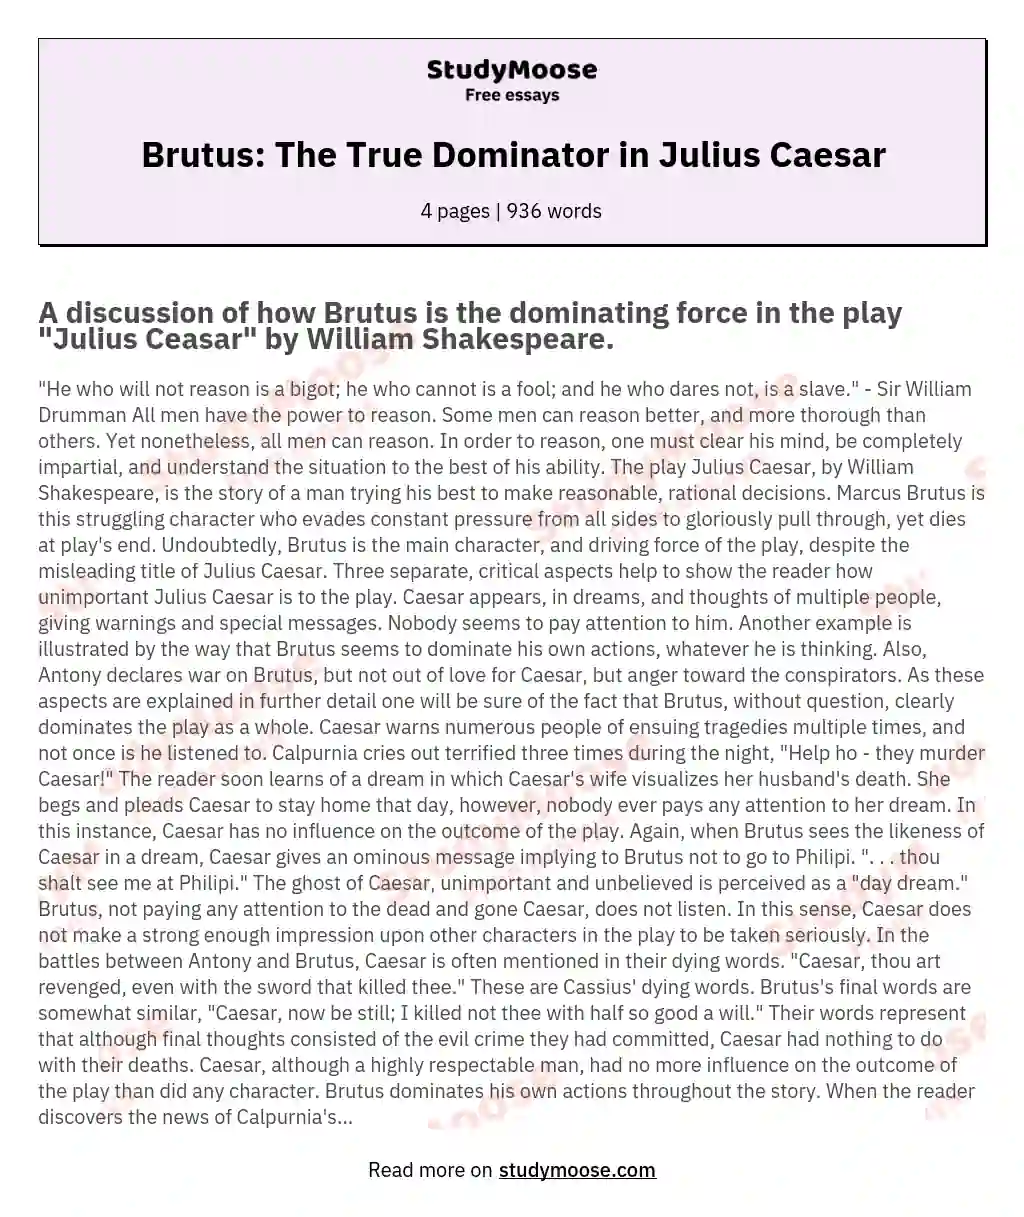 Brutus: The True Dominator in Julius Caesar essay